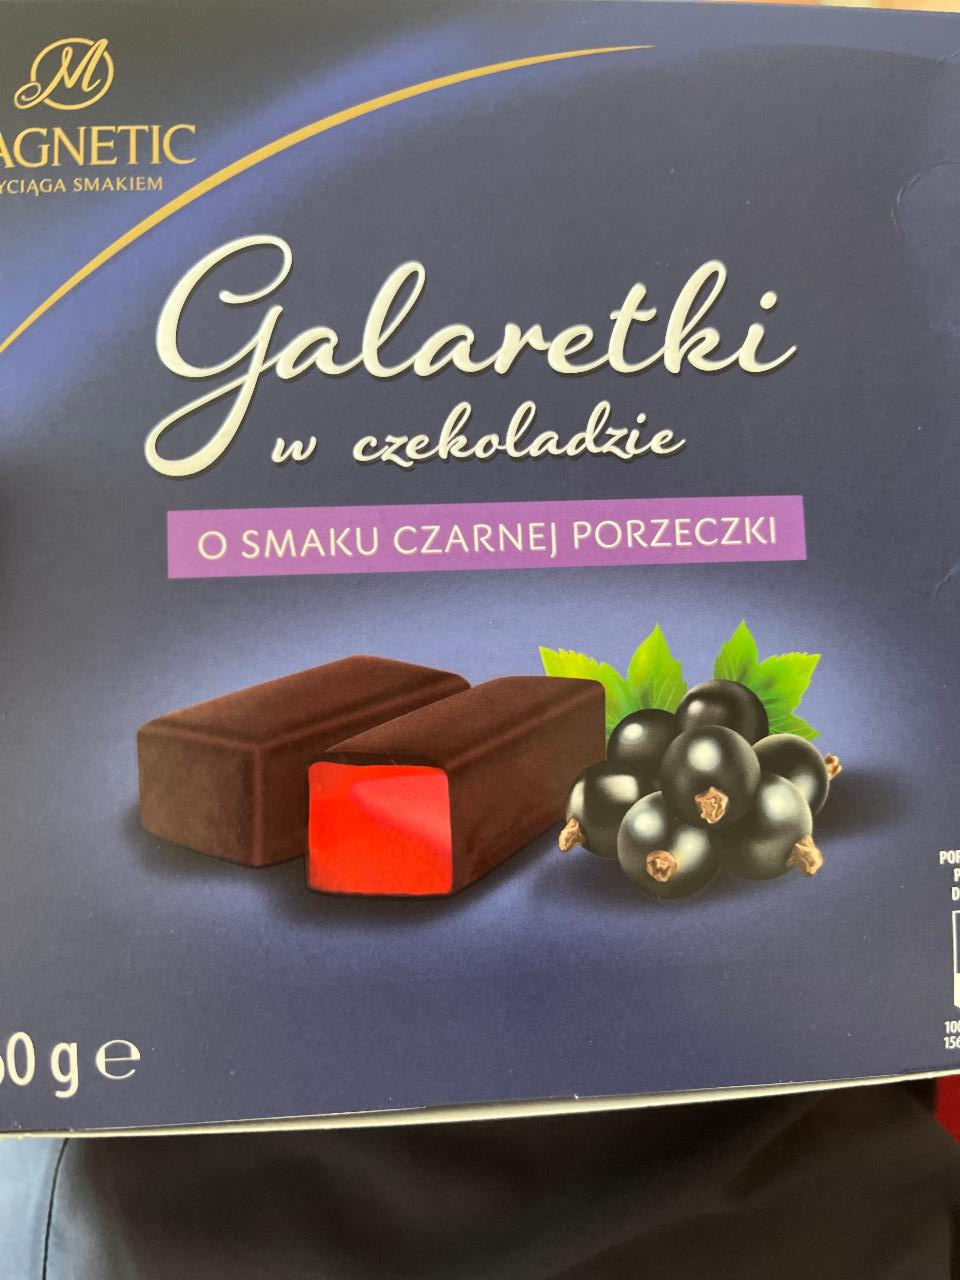 Фото - желе из черной смородины в шоколаде Magnetic